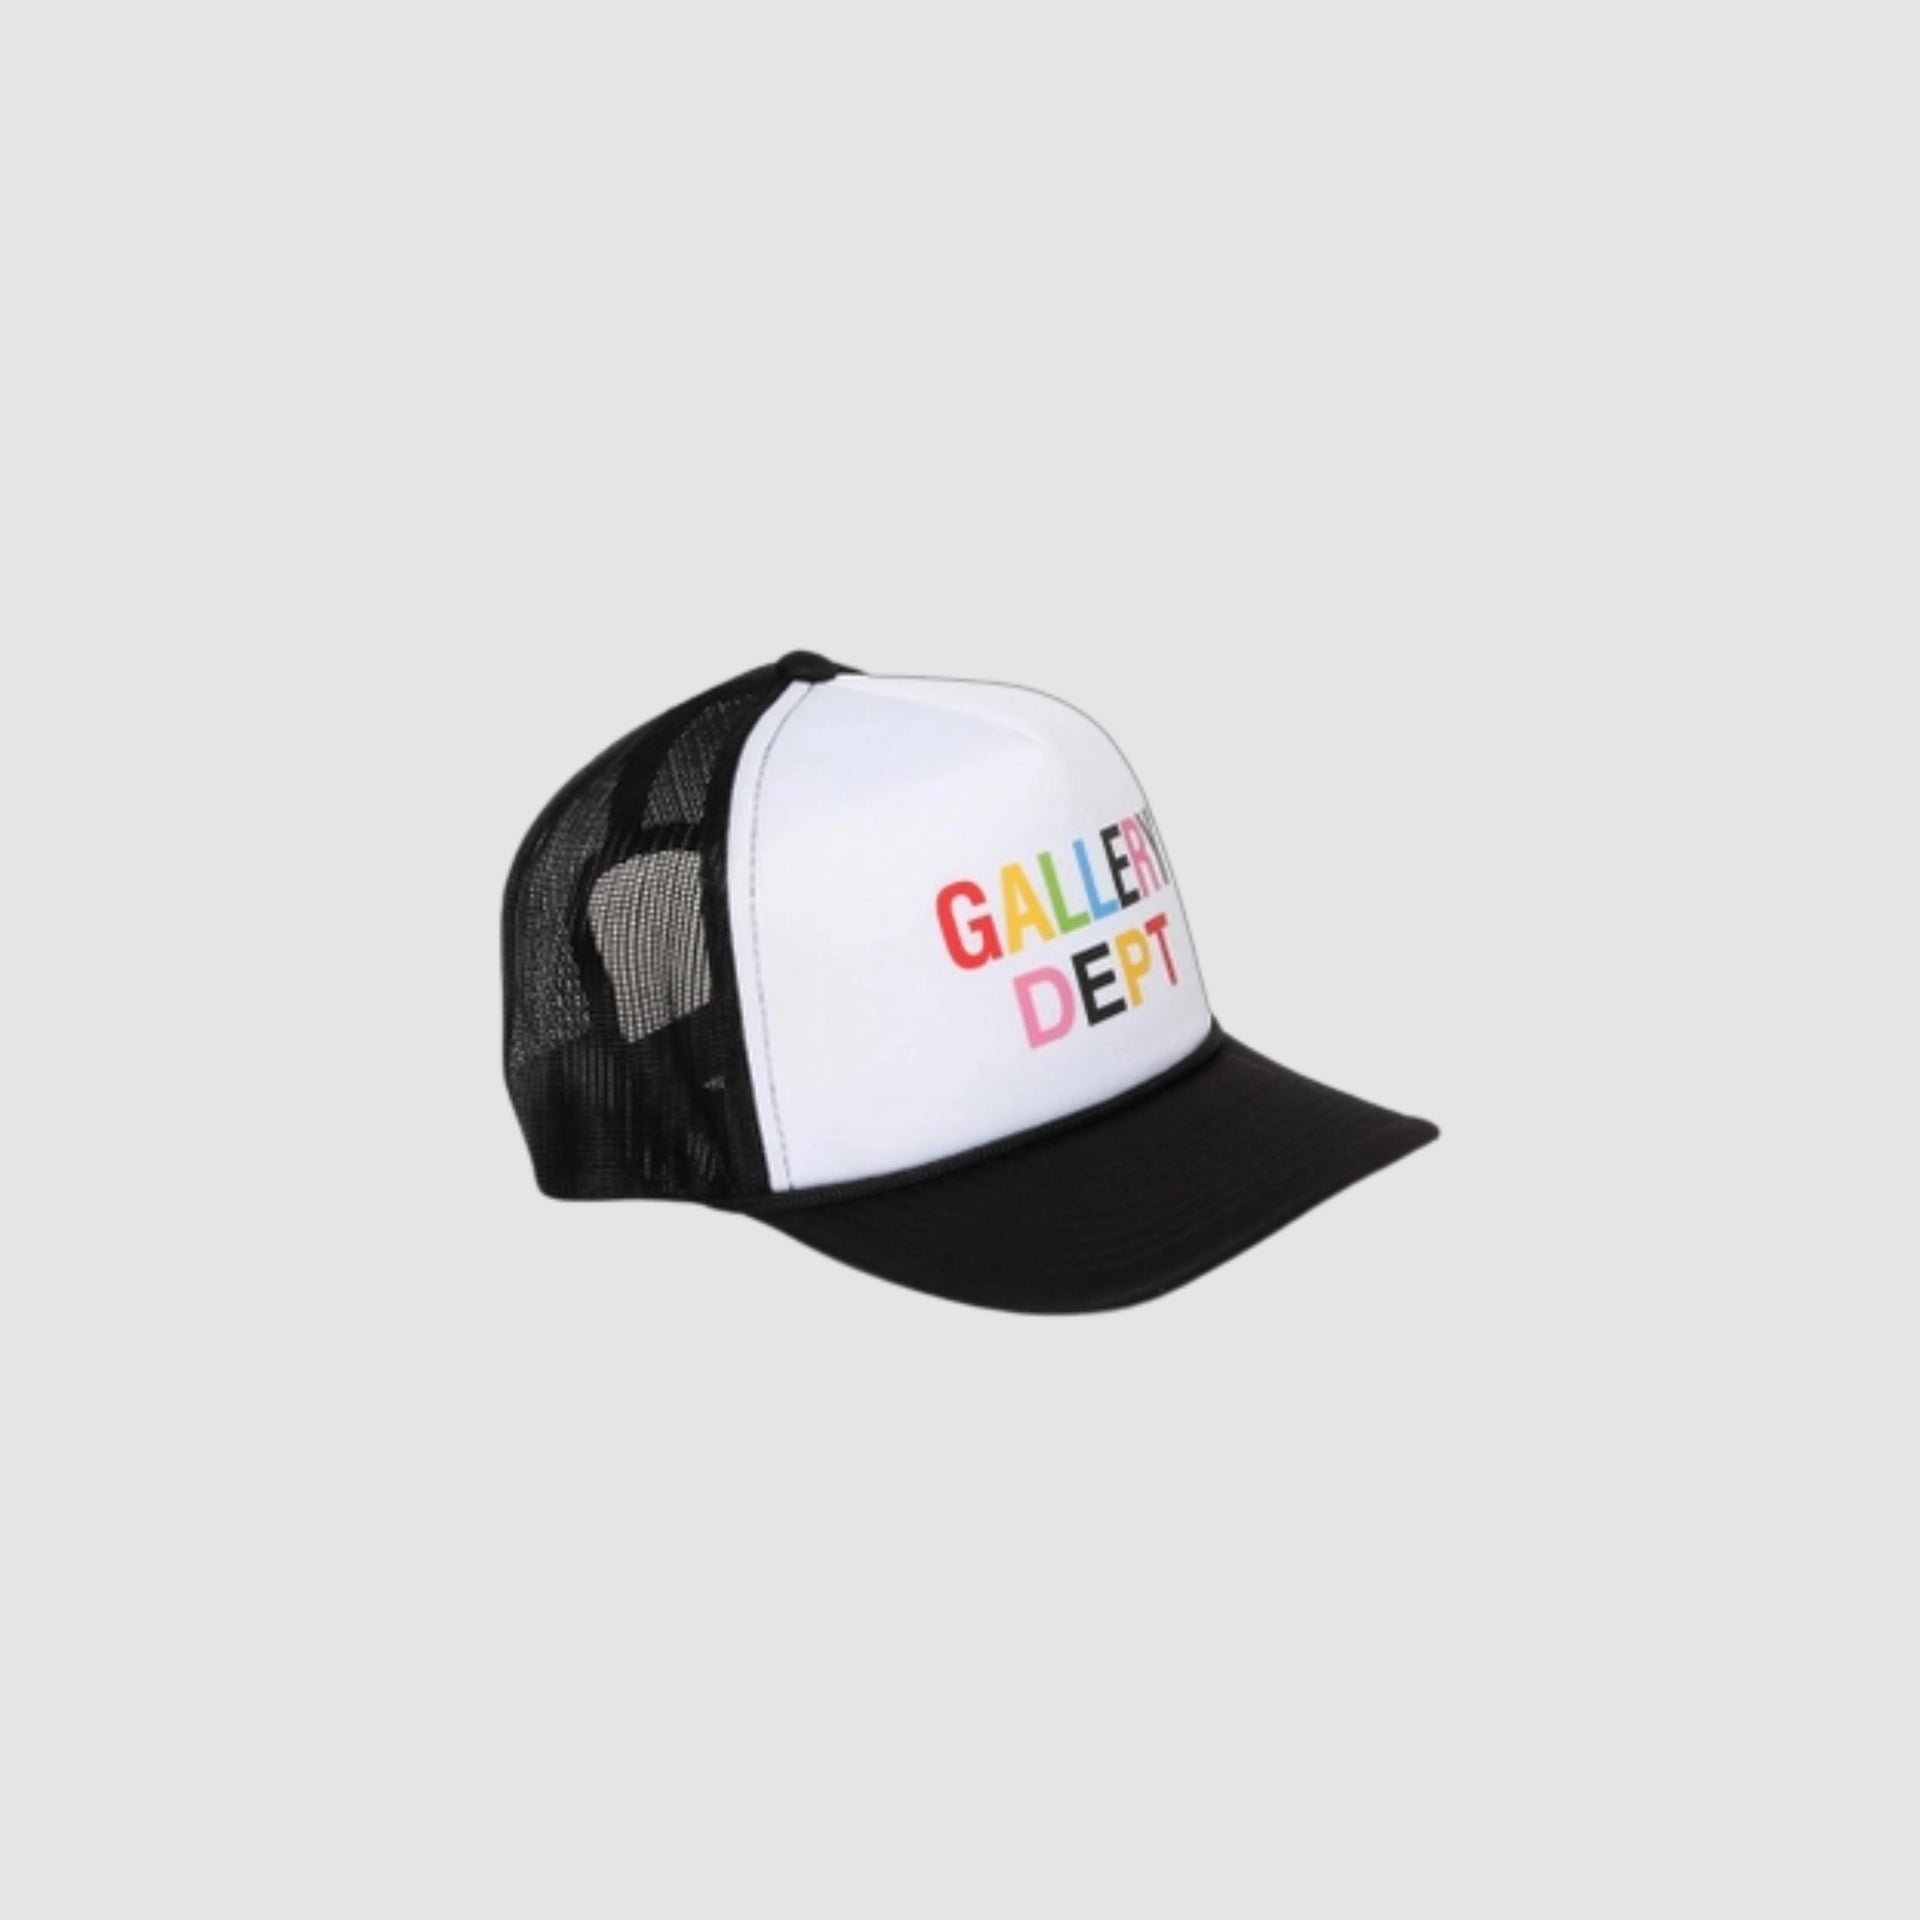 GALLERY DEPT Beverly Hills Curved Brim Trucker Hat